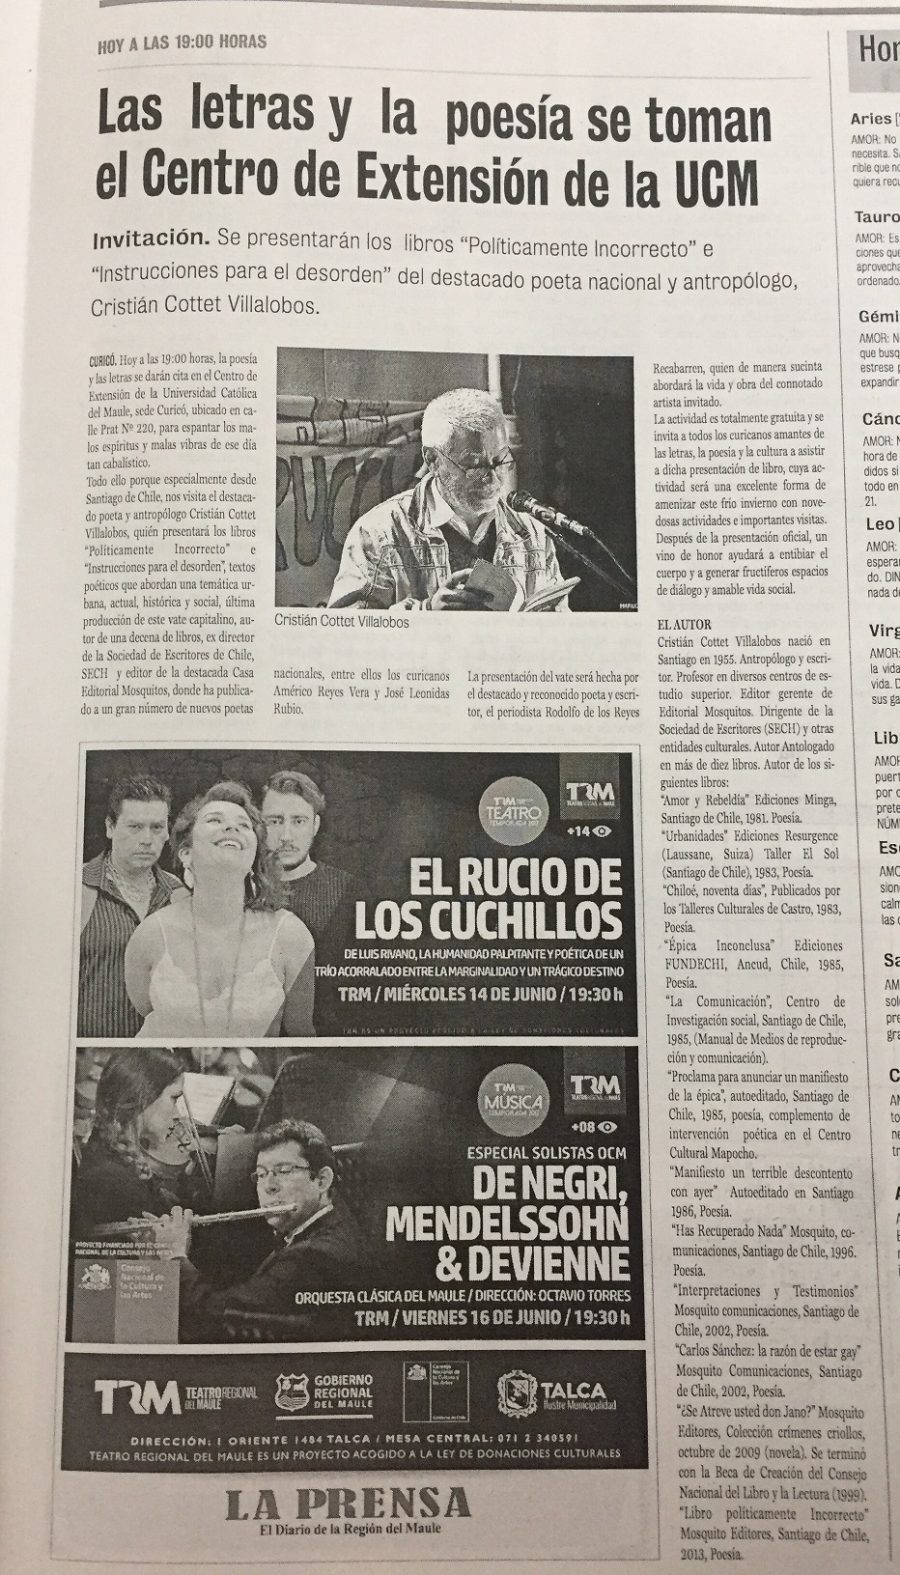 13 de junio en Diario La Prensa: “Las letras y la poesía se toman el Centro de Extensión de la UCM”